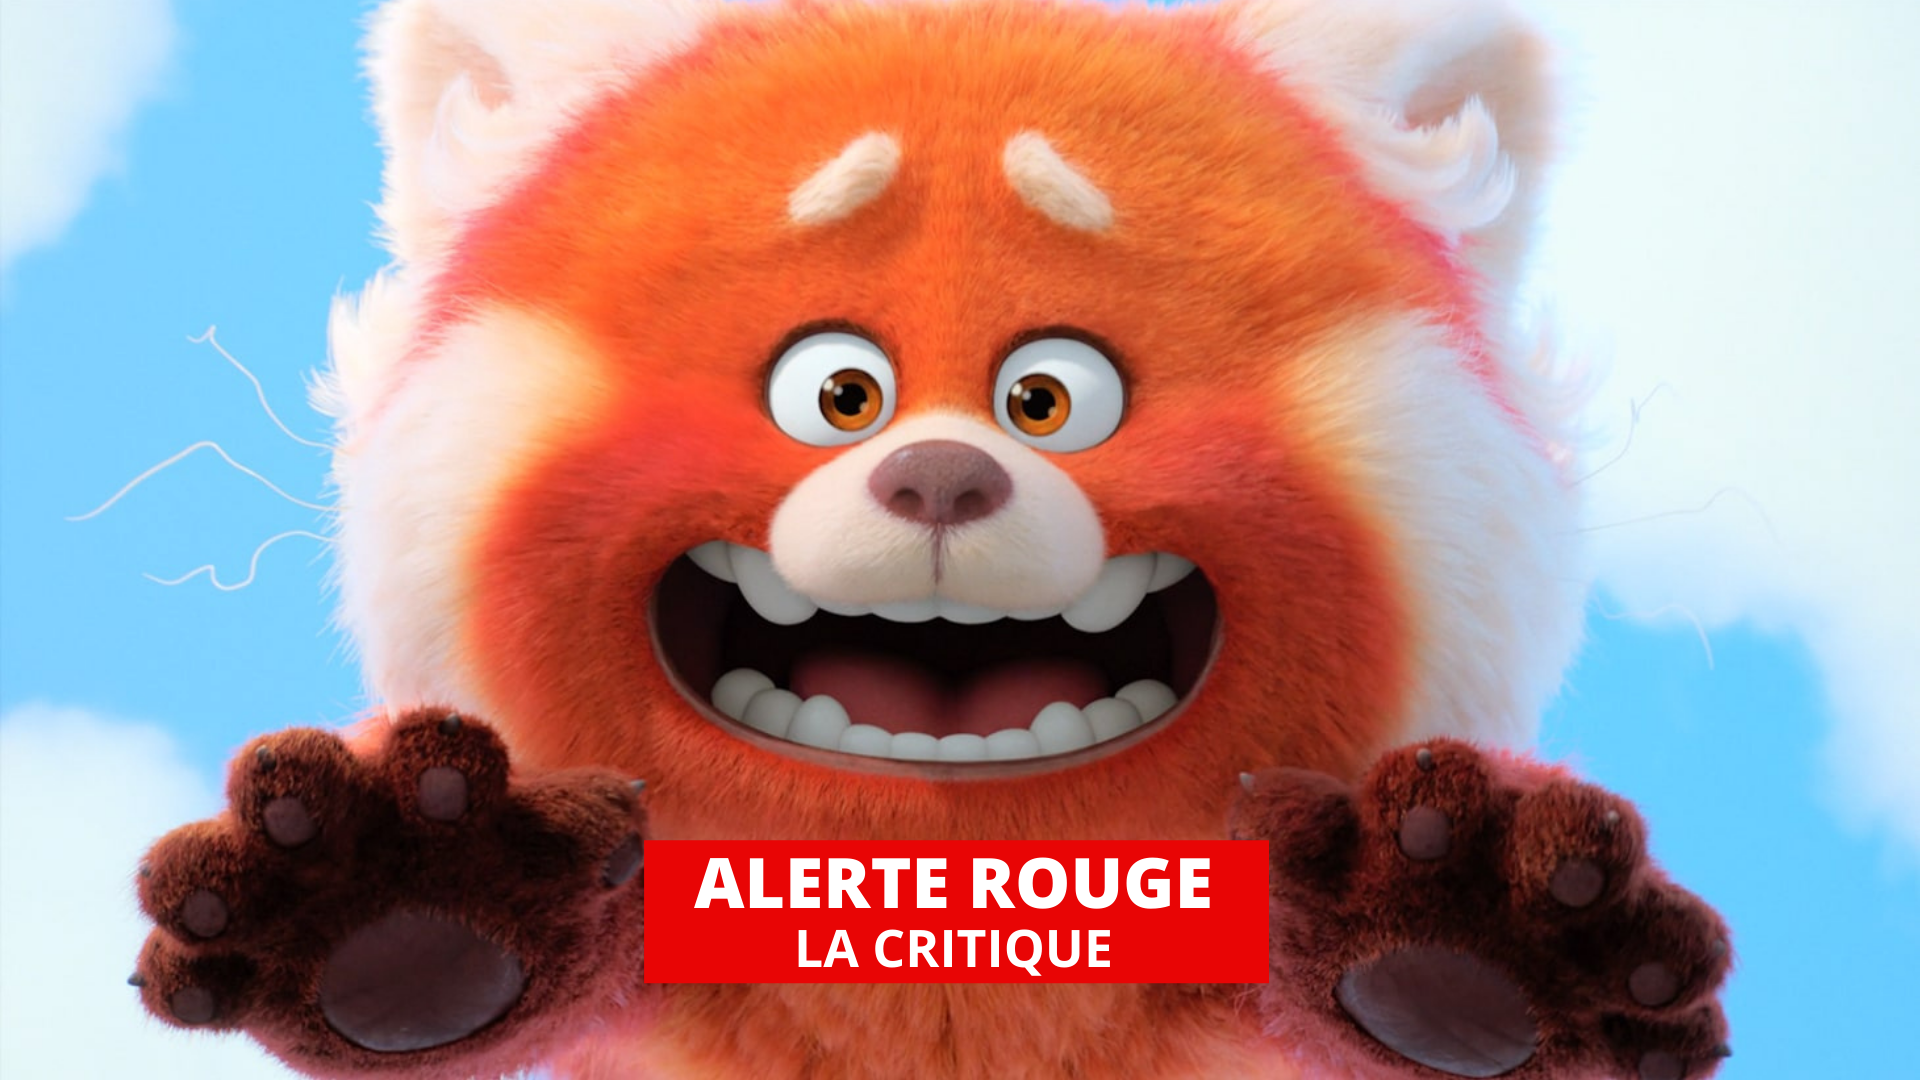 Alerte rouge : Pixar s'attaque à la culture chinoise